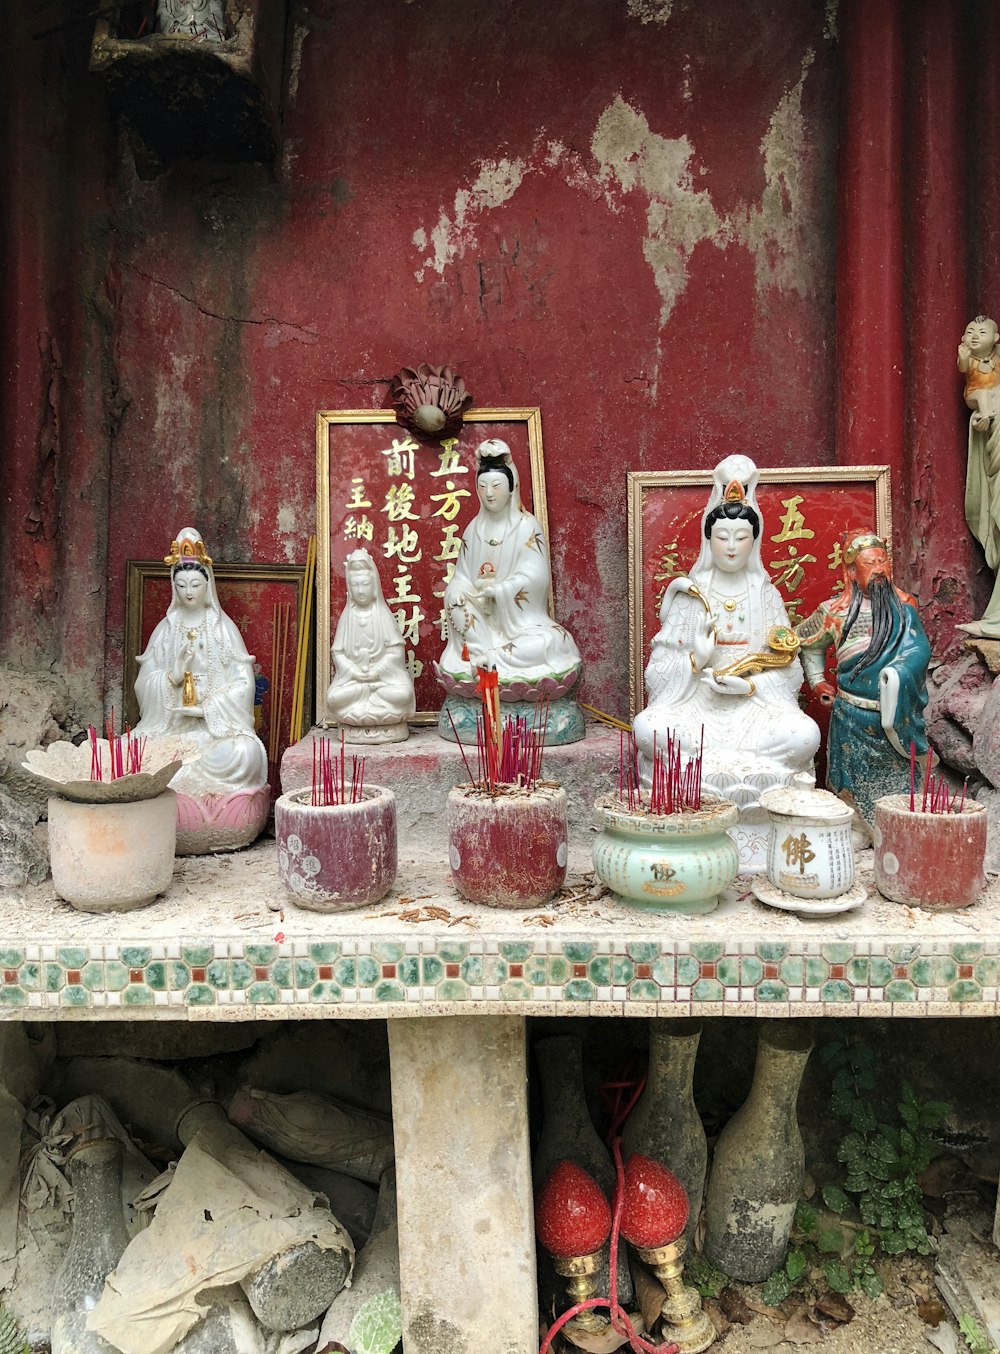 cinque statuette assortite di divinità indù in ceramica